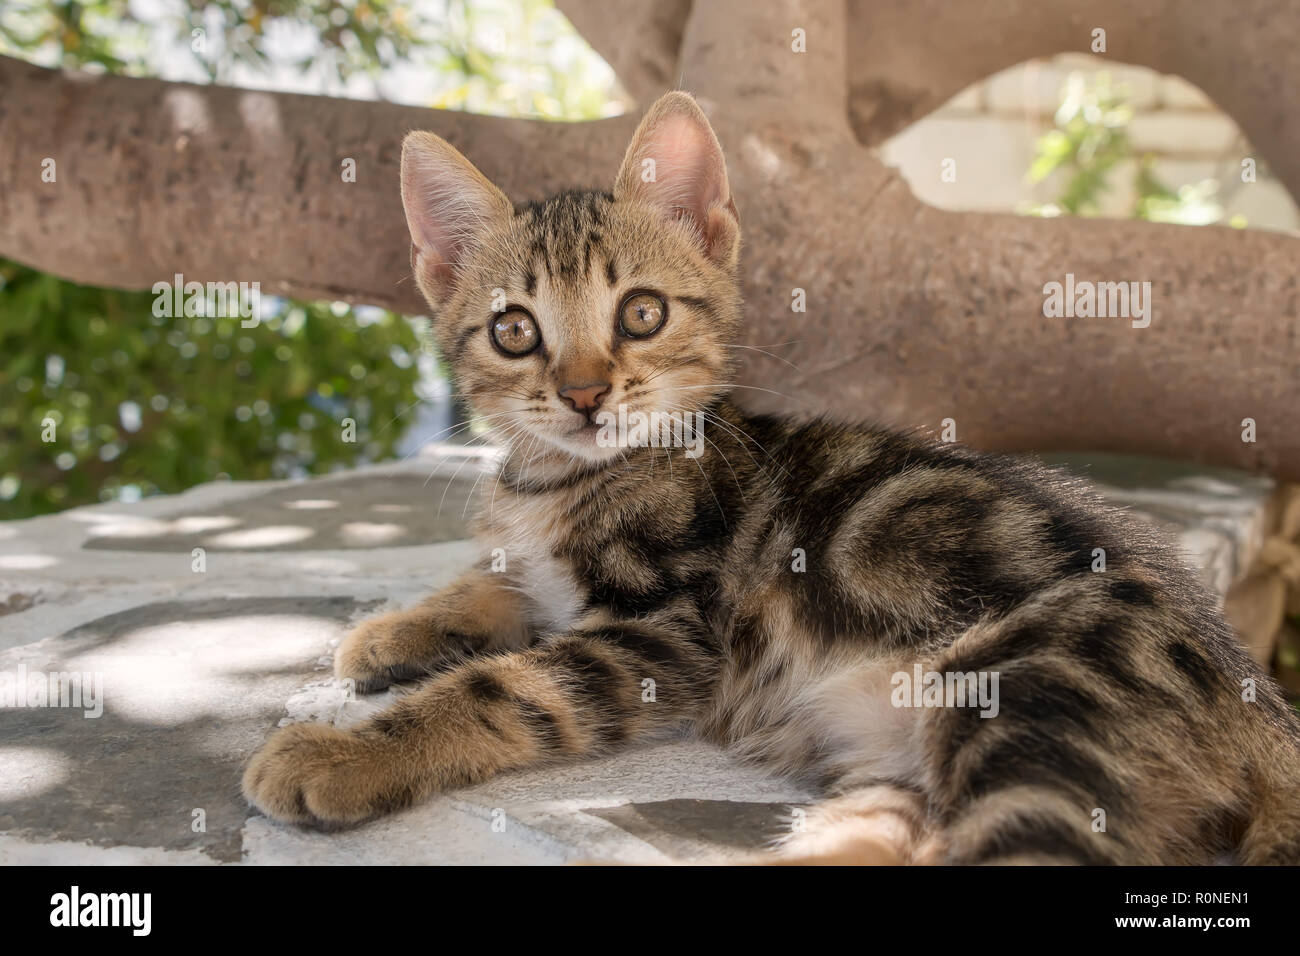 Gatti marmorizzati immagini e fotografie stock ad alta risoluzione - Alamy